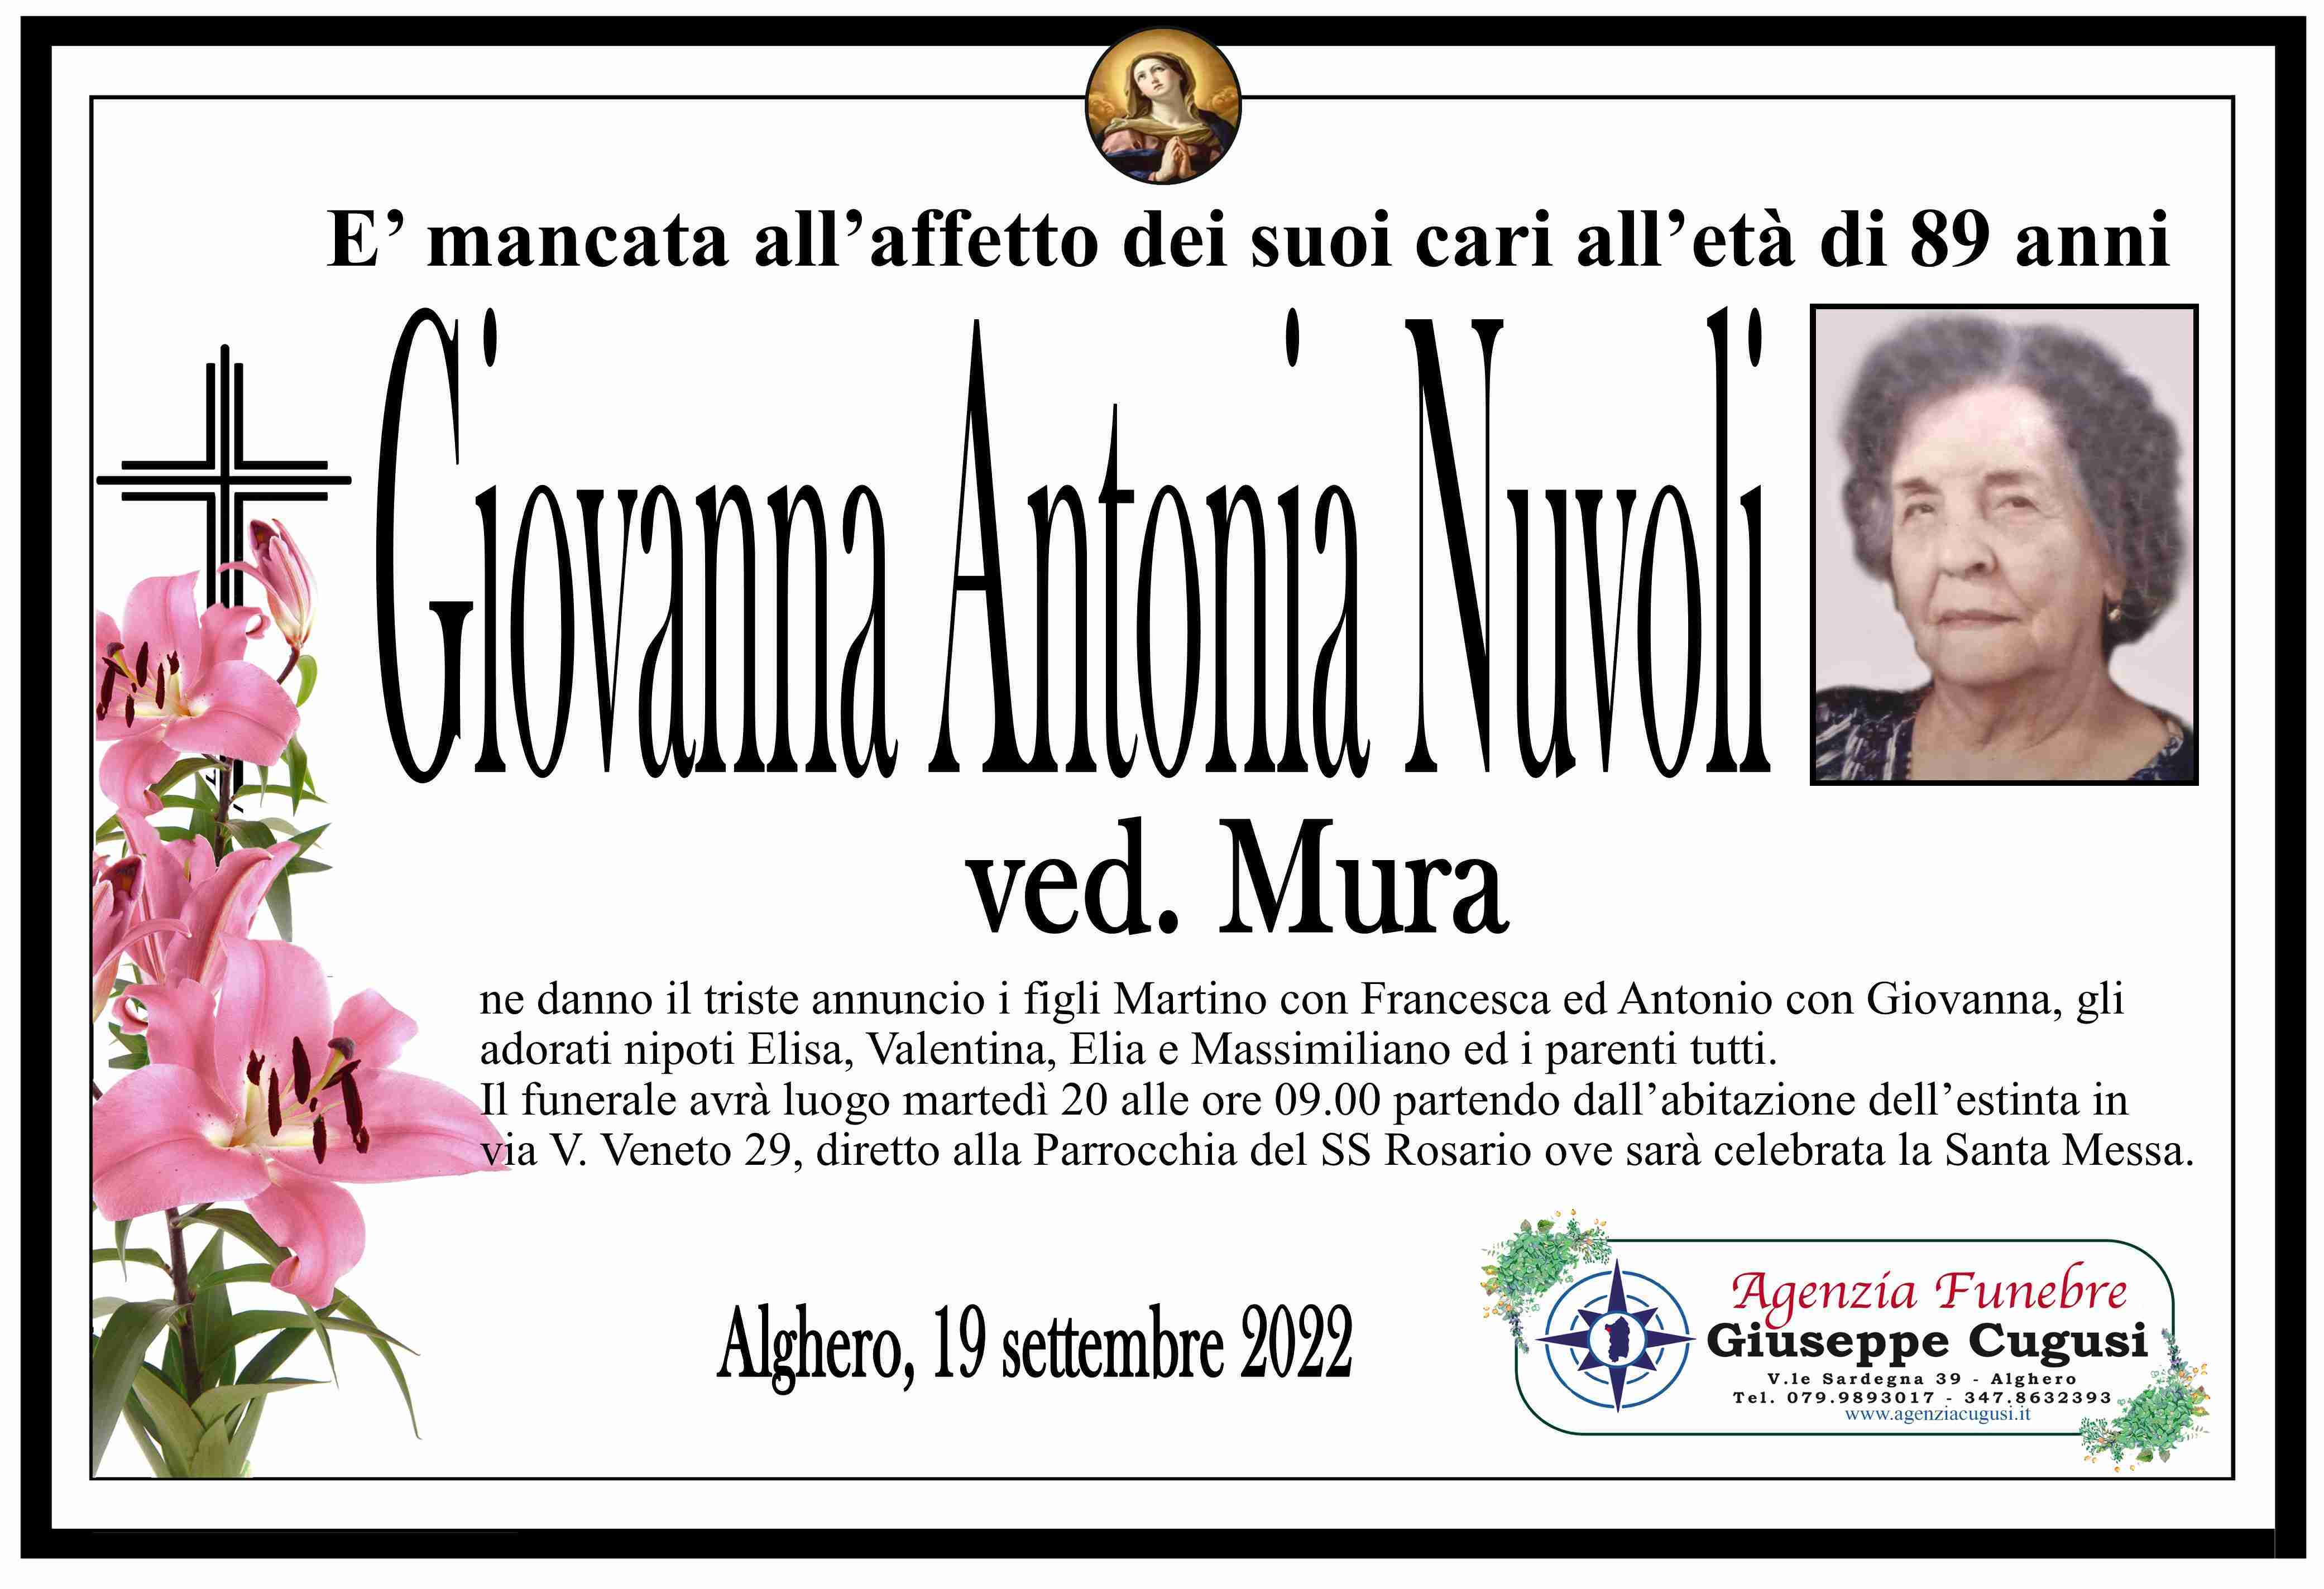 Giovanna Antonia Nuvoli